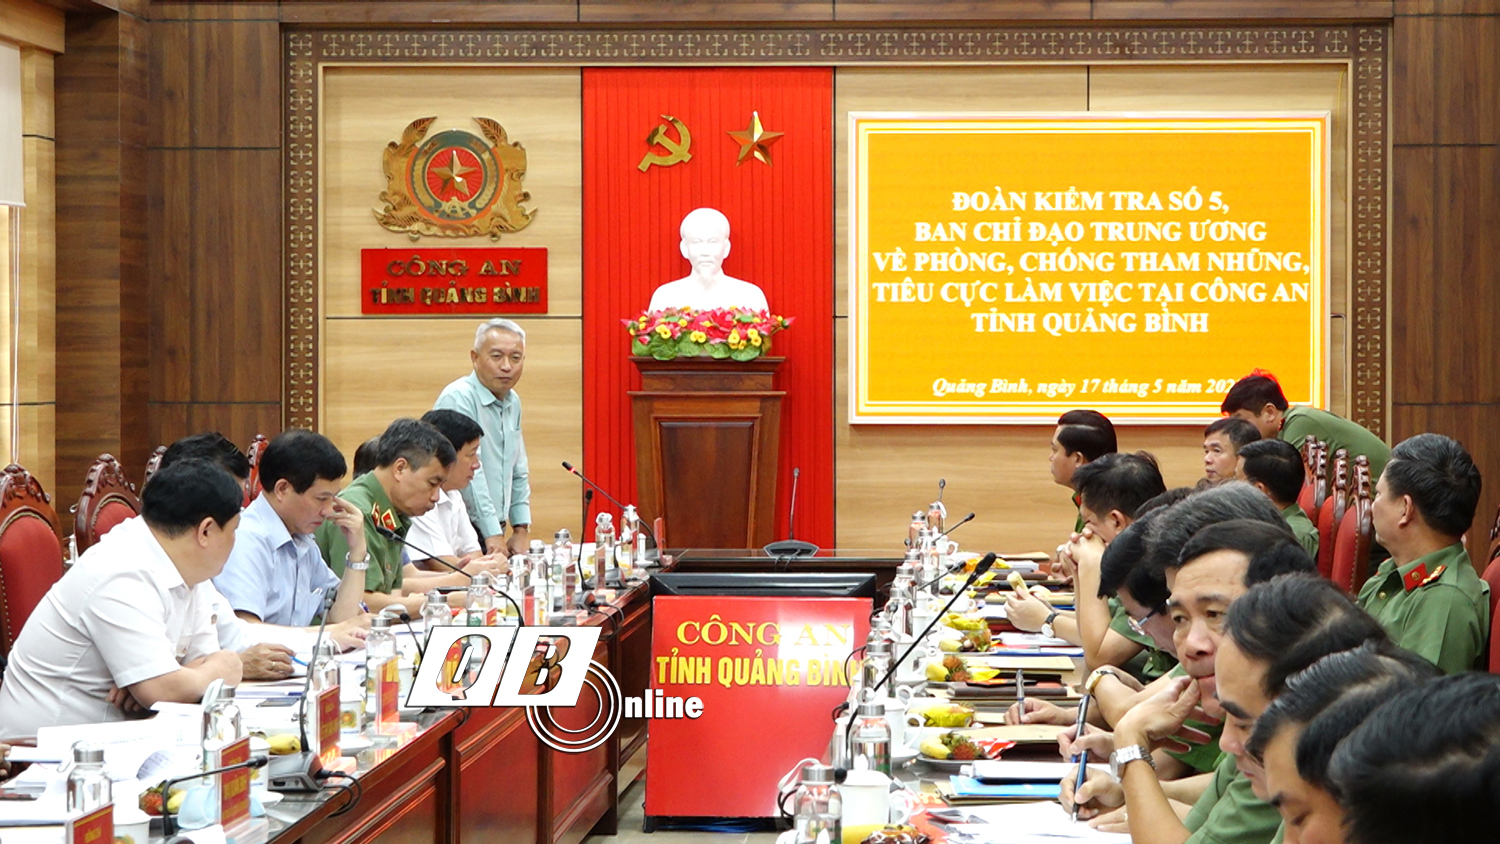 Đoàn kiểm tra số 5 của Ban chỉ đạo Trung ương kiểm tra công tác đấu tranh phòng, chống tham nhũng tại Công an Quảng Bình